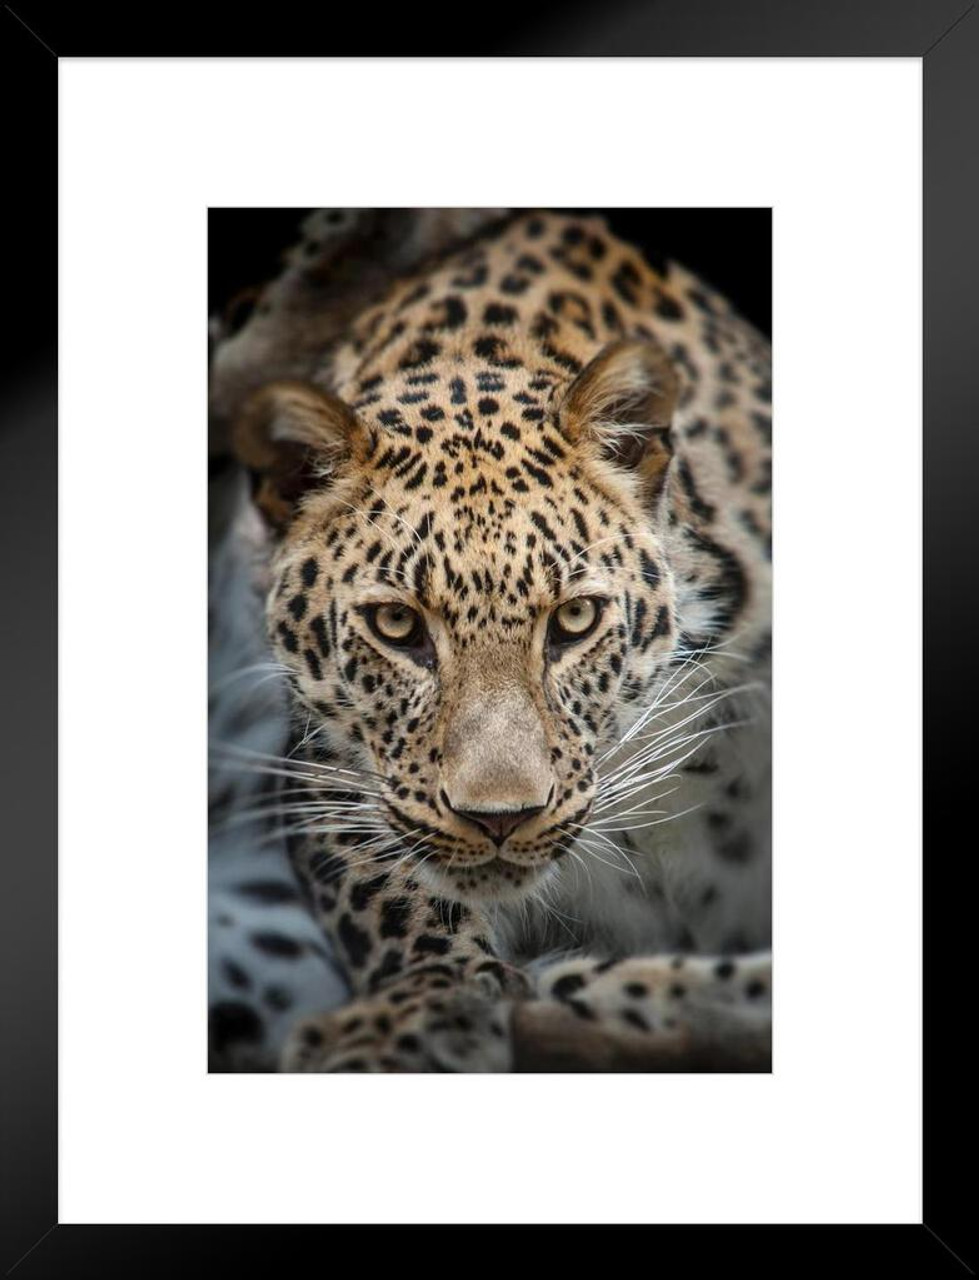 Posters Leopard Print Decor, Wall Art Cheetah Print, Leopard Print